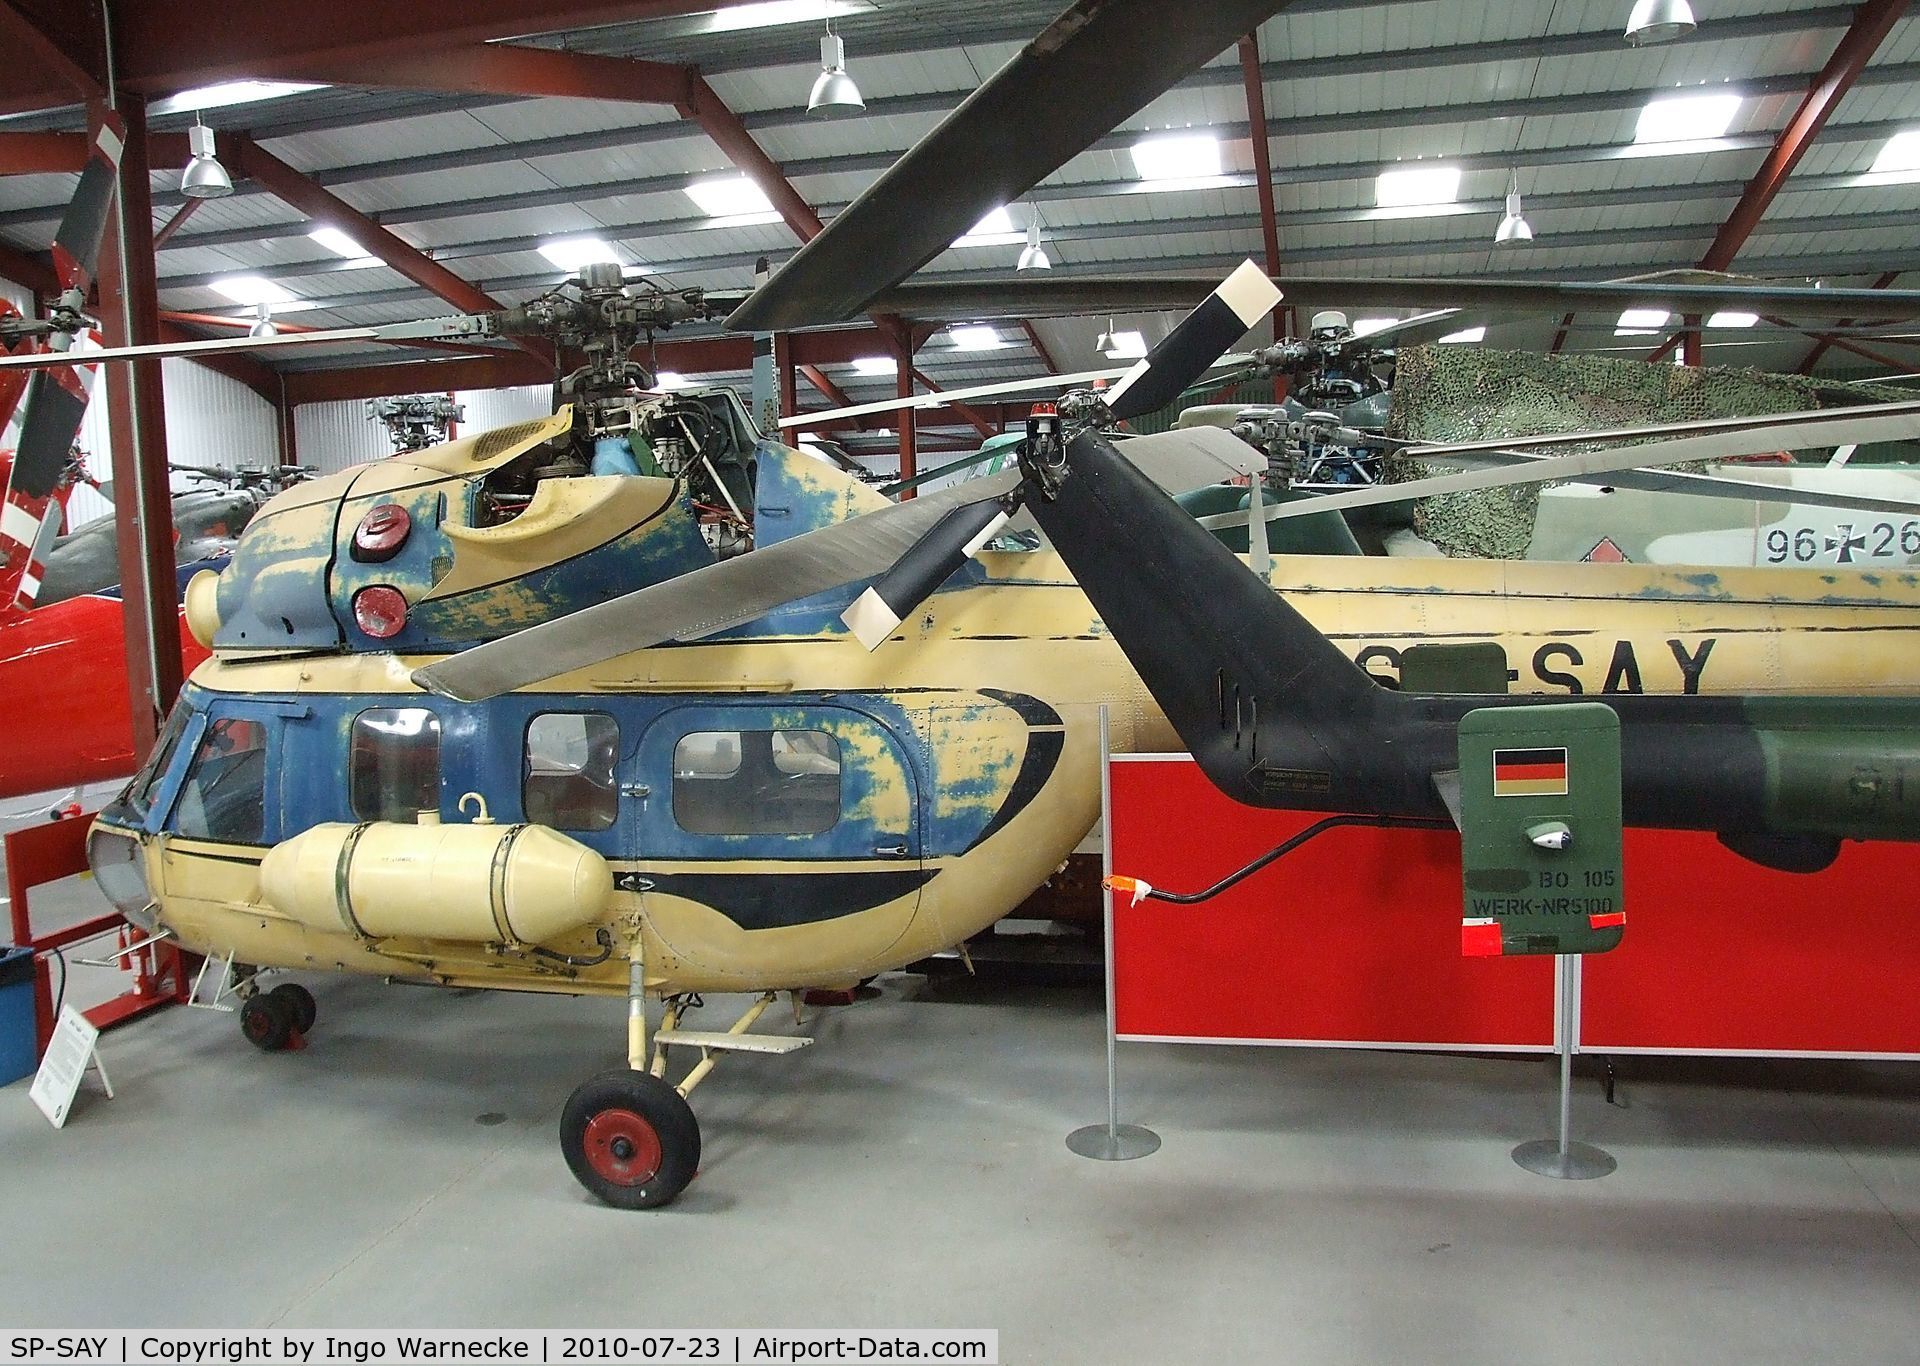 SP-SAY, 1985 PZL-Swidnik Mi-2 C/N 529538125, Mil (PZL-Swidnik) Mi-2 Hoplite at the Helicopter Museum, Weston-super-Mare